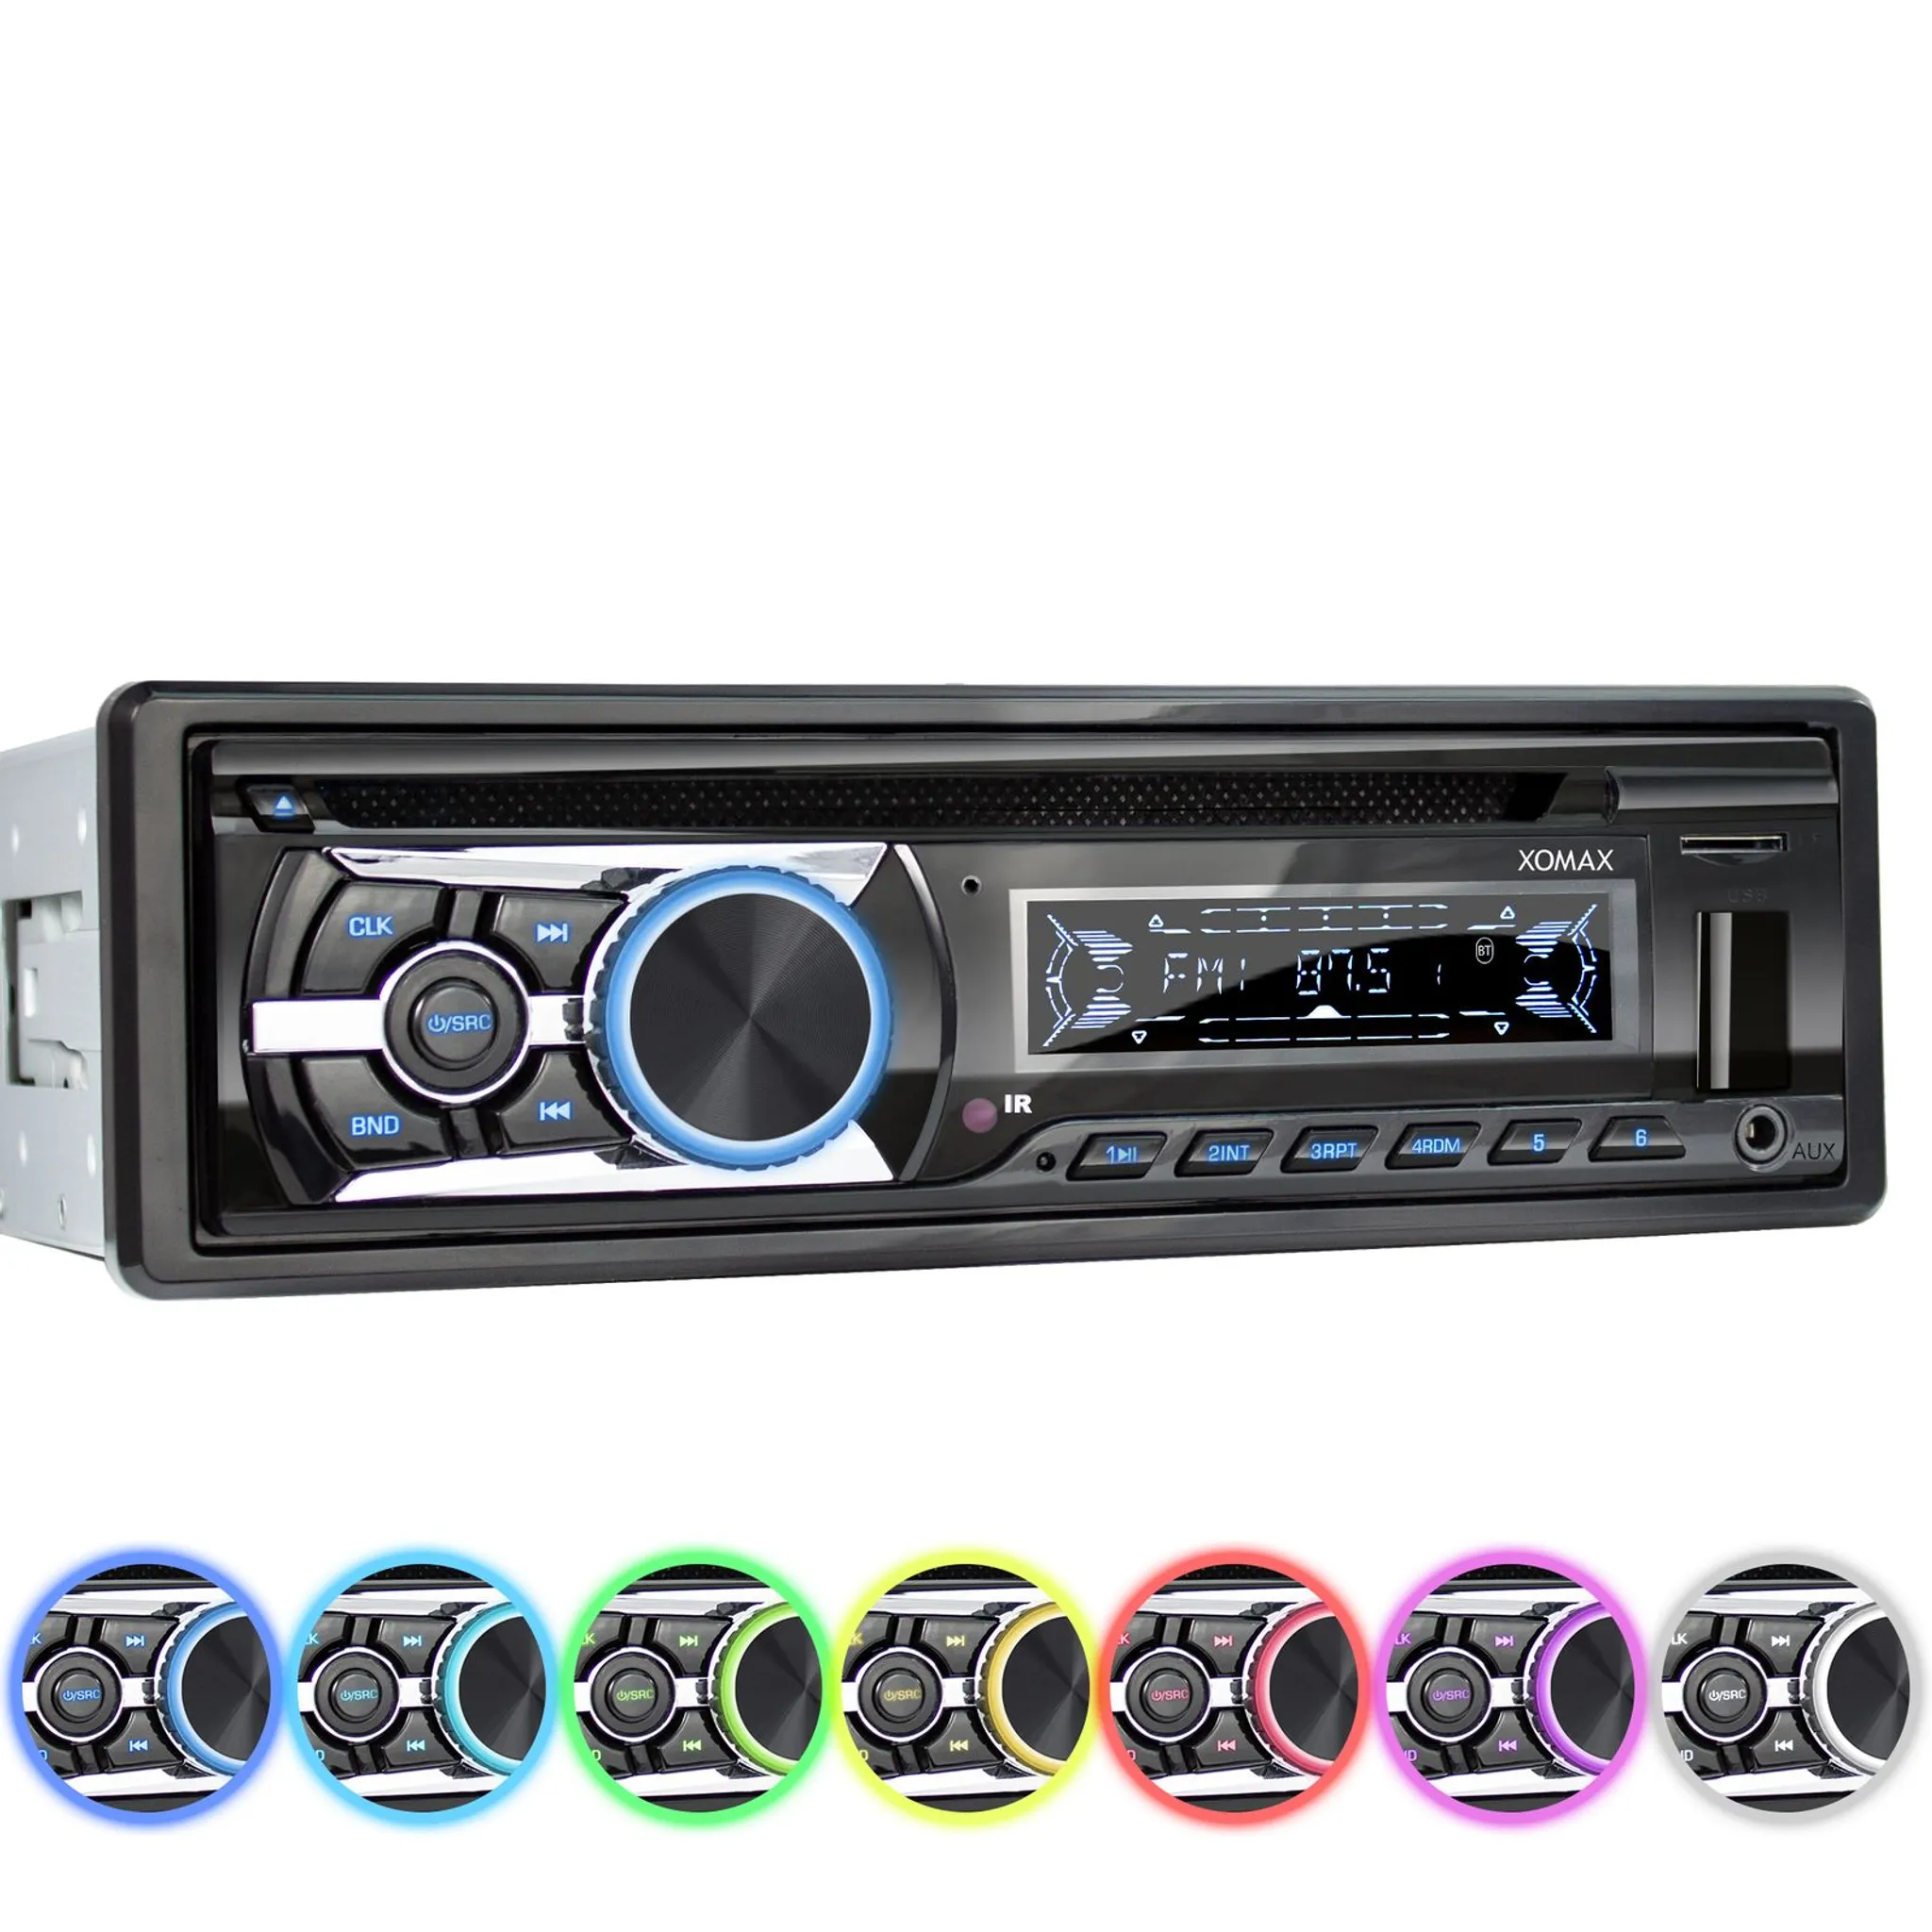 Caliber Autoradio - Auto Radio mit Bluetooth - Aux In - CD - FM - SD - USB  - Einstellbare Tastenbeleuchtung - Mit Freisprechfunktion - 4X 75 Watt 